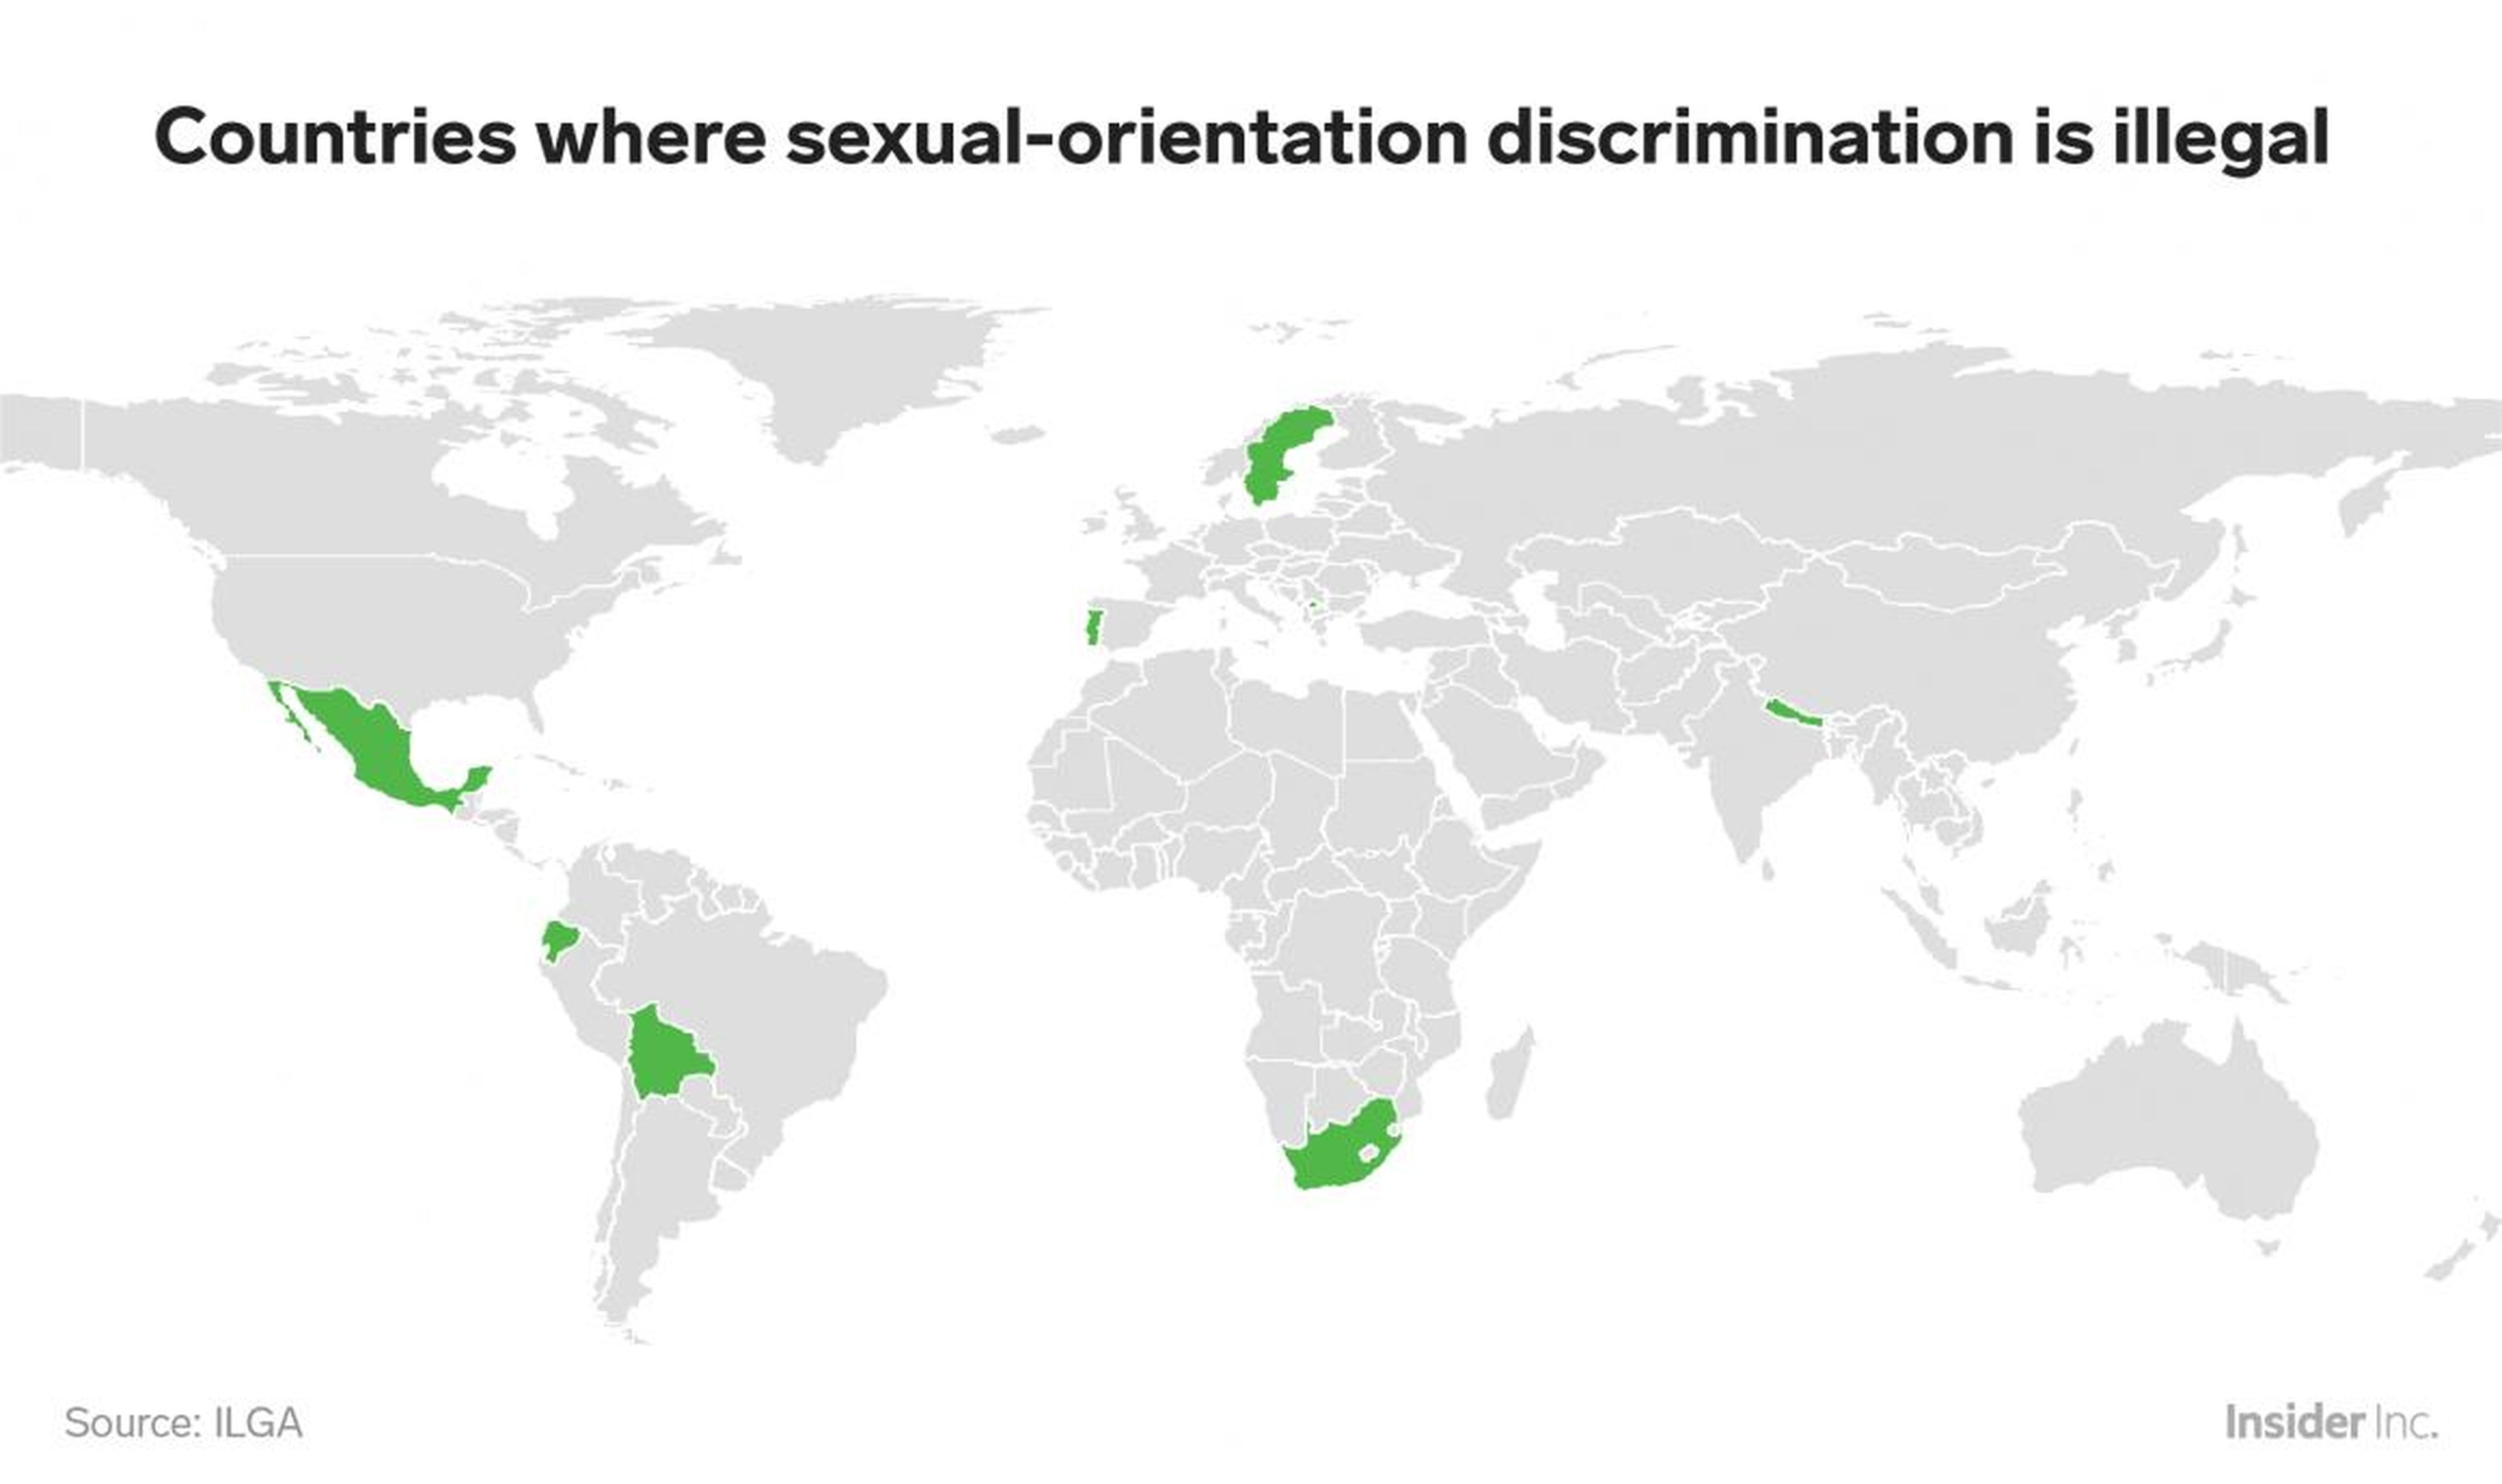 Solo el 5% de los Estados miembros de la ONU han escrito en sus constituciones que no se permite la discriminación basada en la orientación sexual.